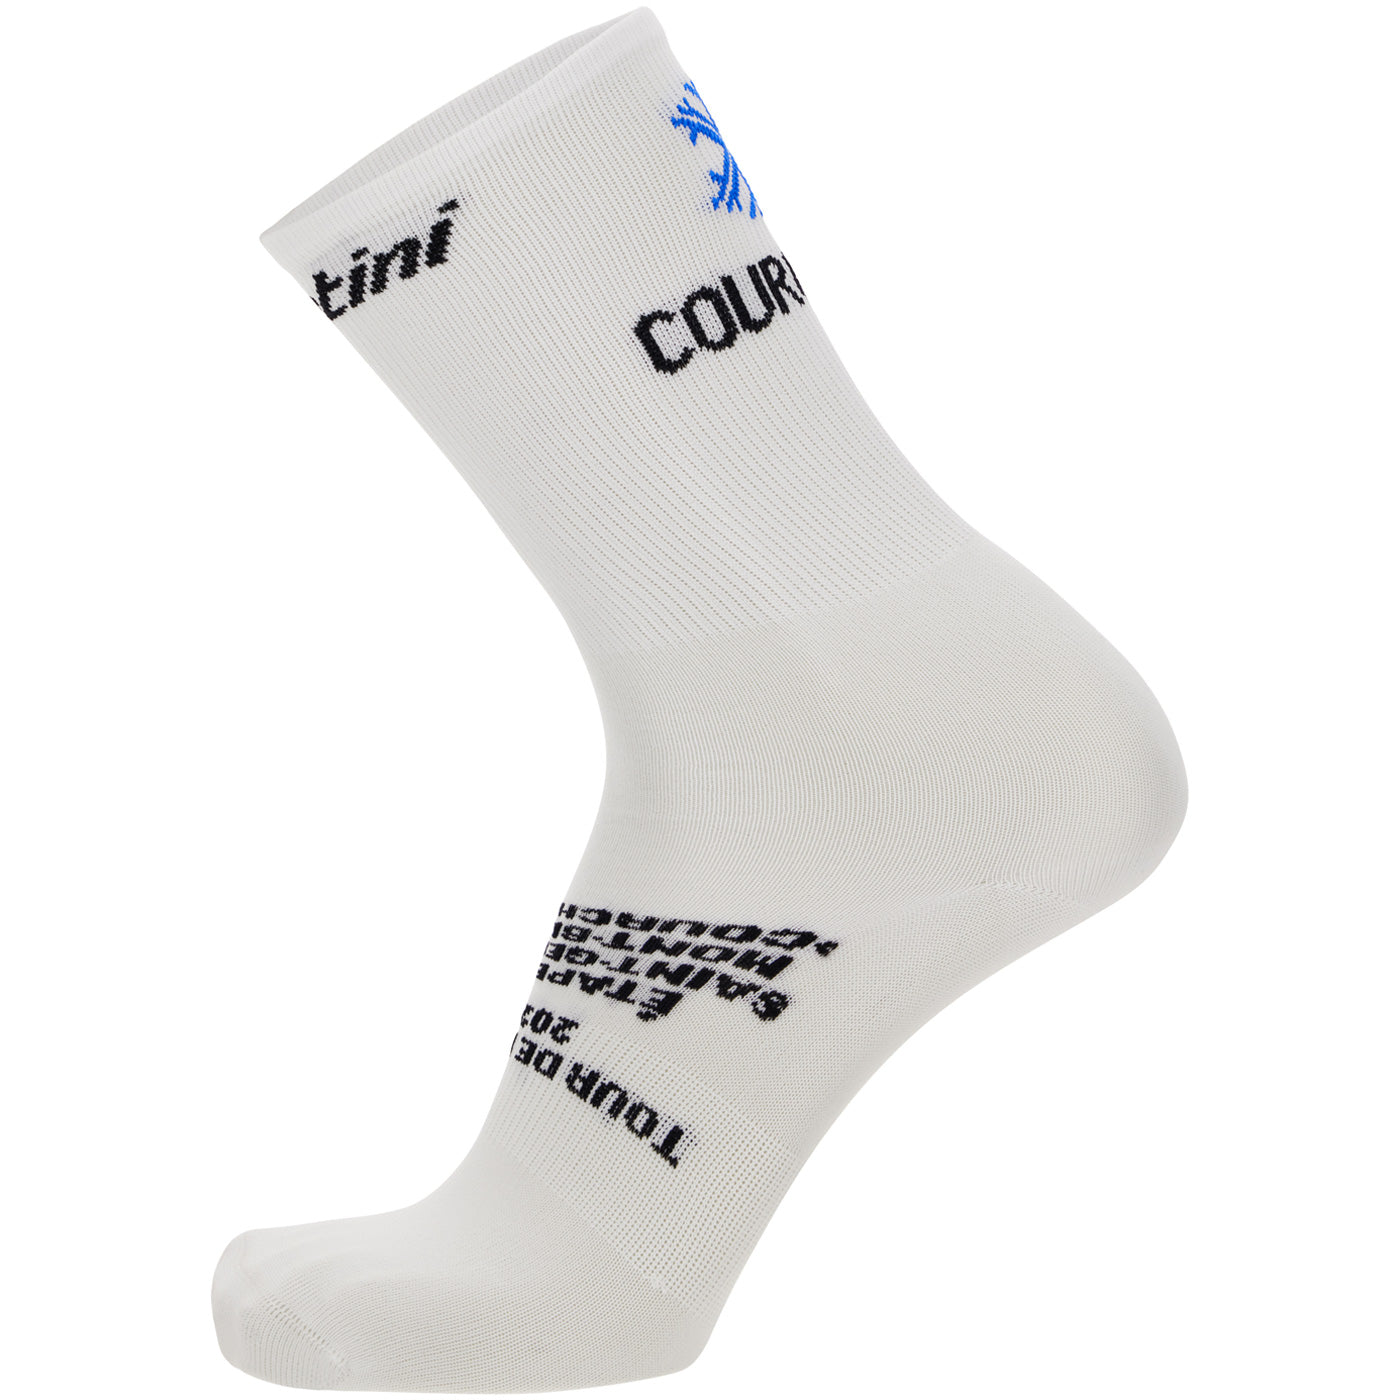 Tour de France socks - Mont Blanc-Courchevel